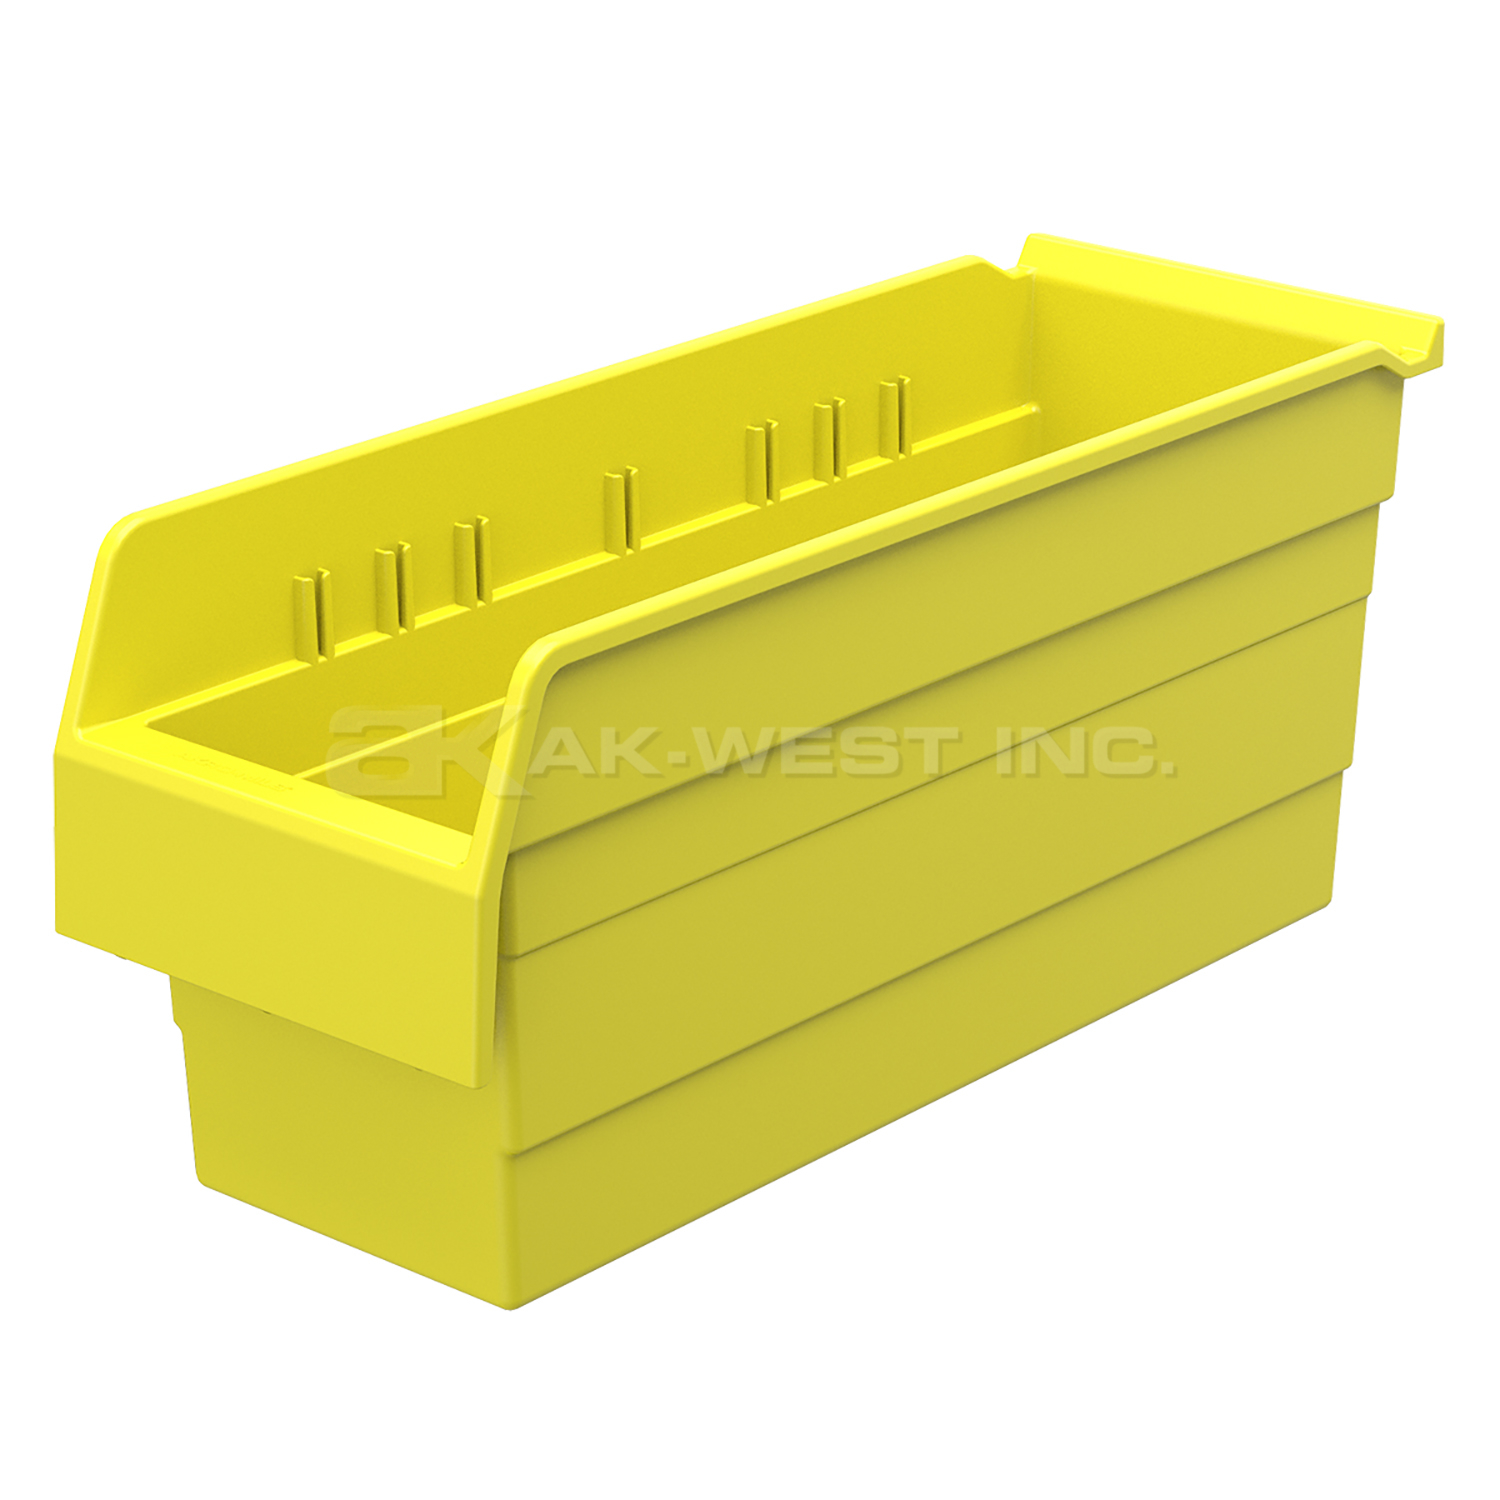 Yellow, 17-5/8" x 6-5/8" x 8" Shelf Bin (10 Per Carton)